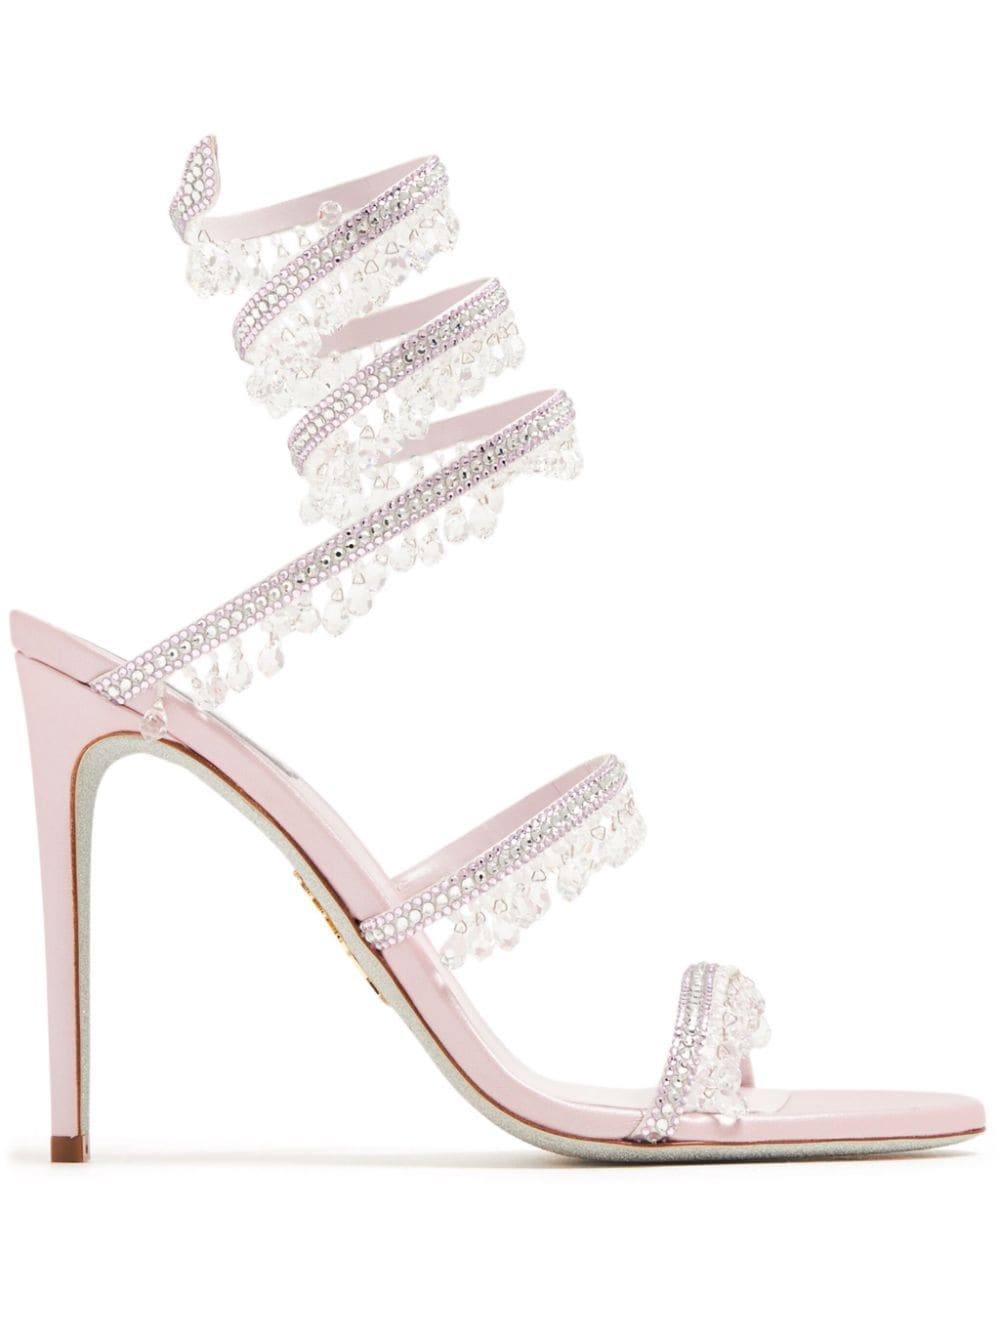 René Caovilla Chandelier 105mm crystal-embellished sandals Pink